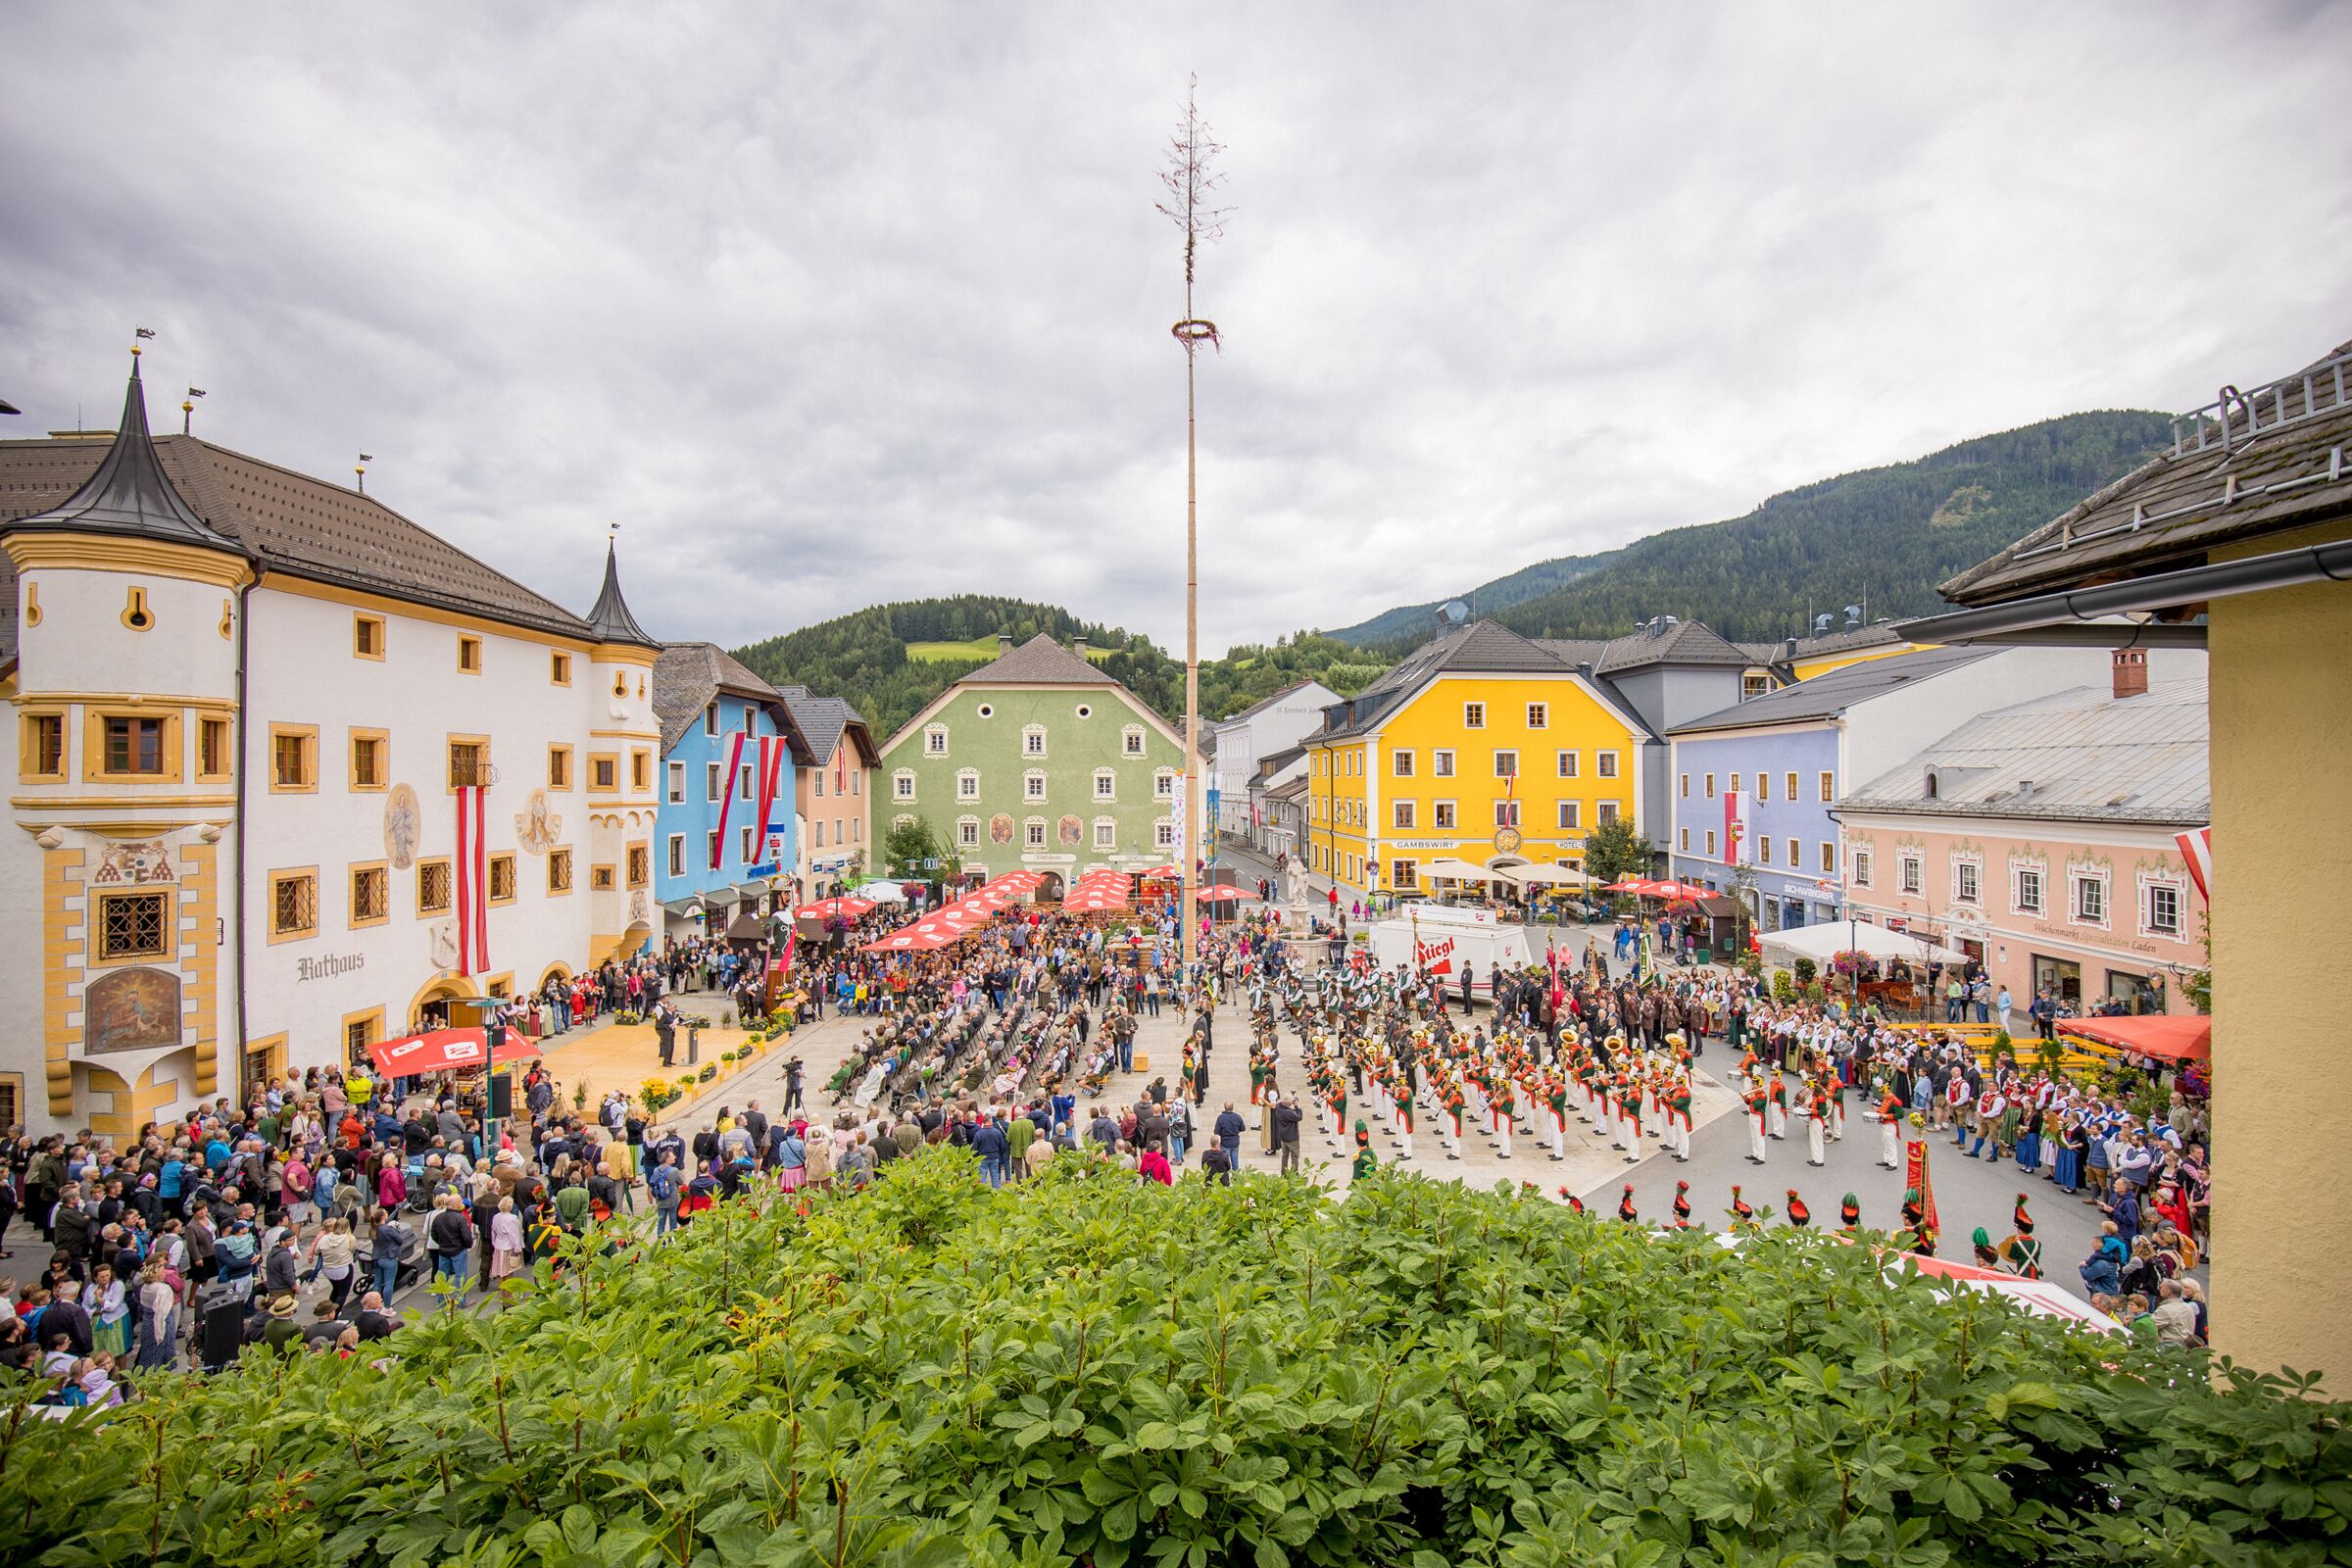 Ein österreichischer Brauch im Salzburger Lungau wird im Dorfzentrum vor dem Rathaus zelebriert und viele Festbesucher sehen zu, Vereine wie die Musikkapelle, Trachtengruppen und Feuerwehr nehmen teil